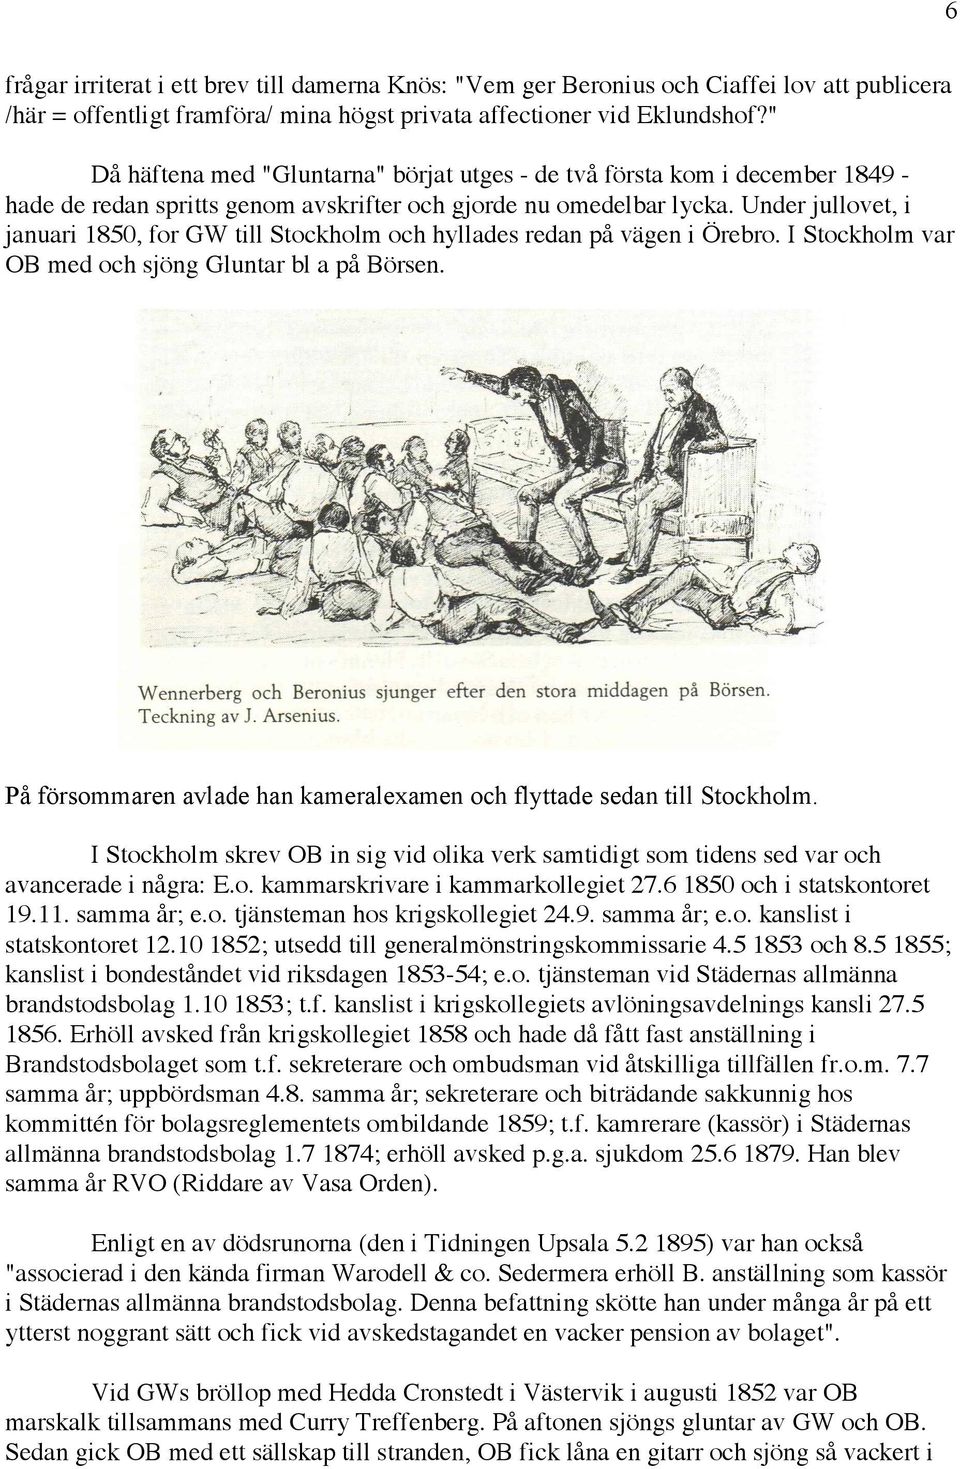 Under jullovet, i januari 1850, for GW till Stockholm och hyllades redan på vägen i Örebro. I Stockholm var OB med och sjöng Gluntar bl a på Börsen.